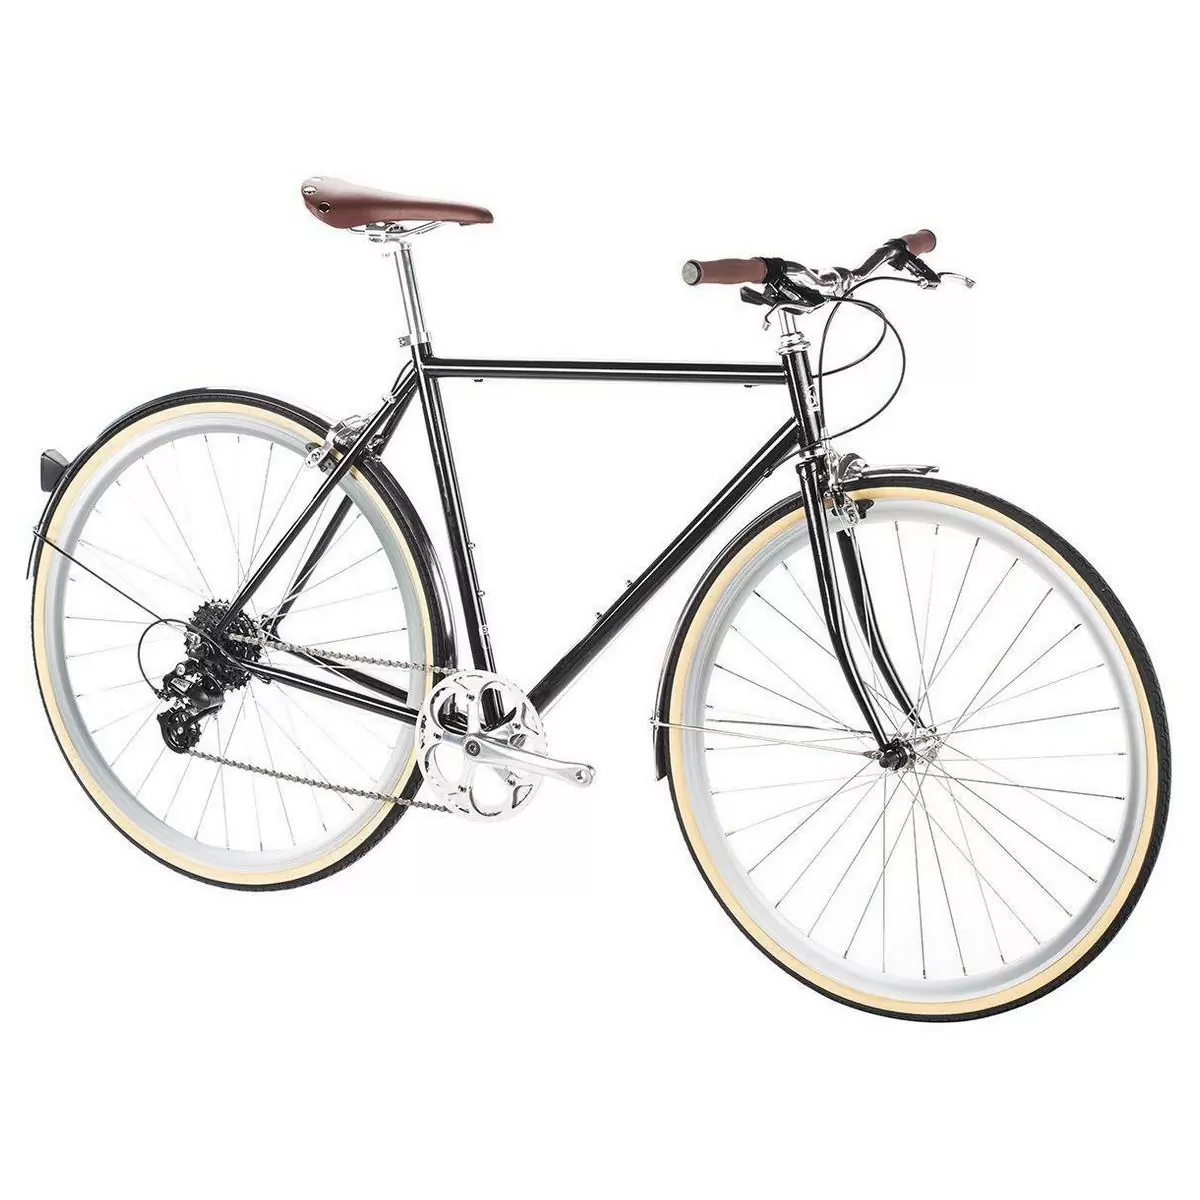 Bicicleta urbana ODYSSEY 8spd Delano preta média 54cm #1